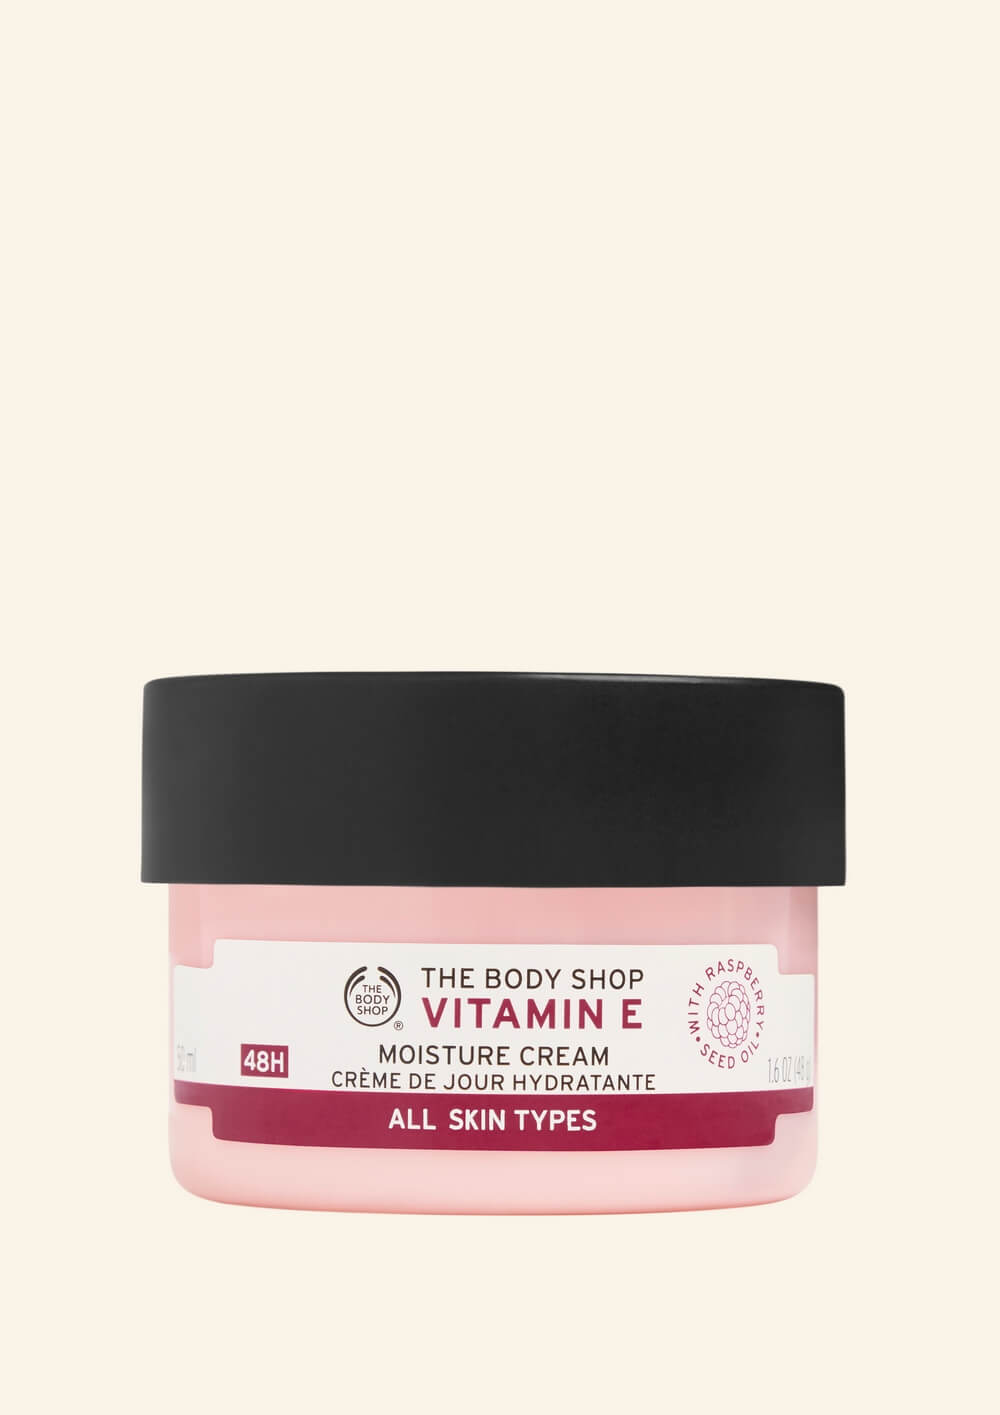 Kem vitamin E có loại nào phù hợp với da mụn và da nhạy cảm không?
